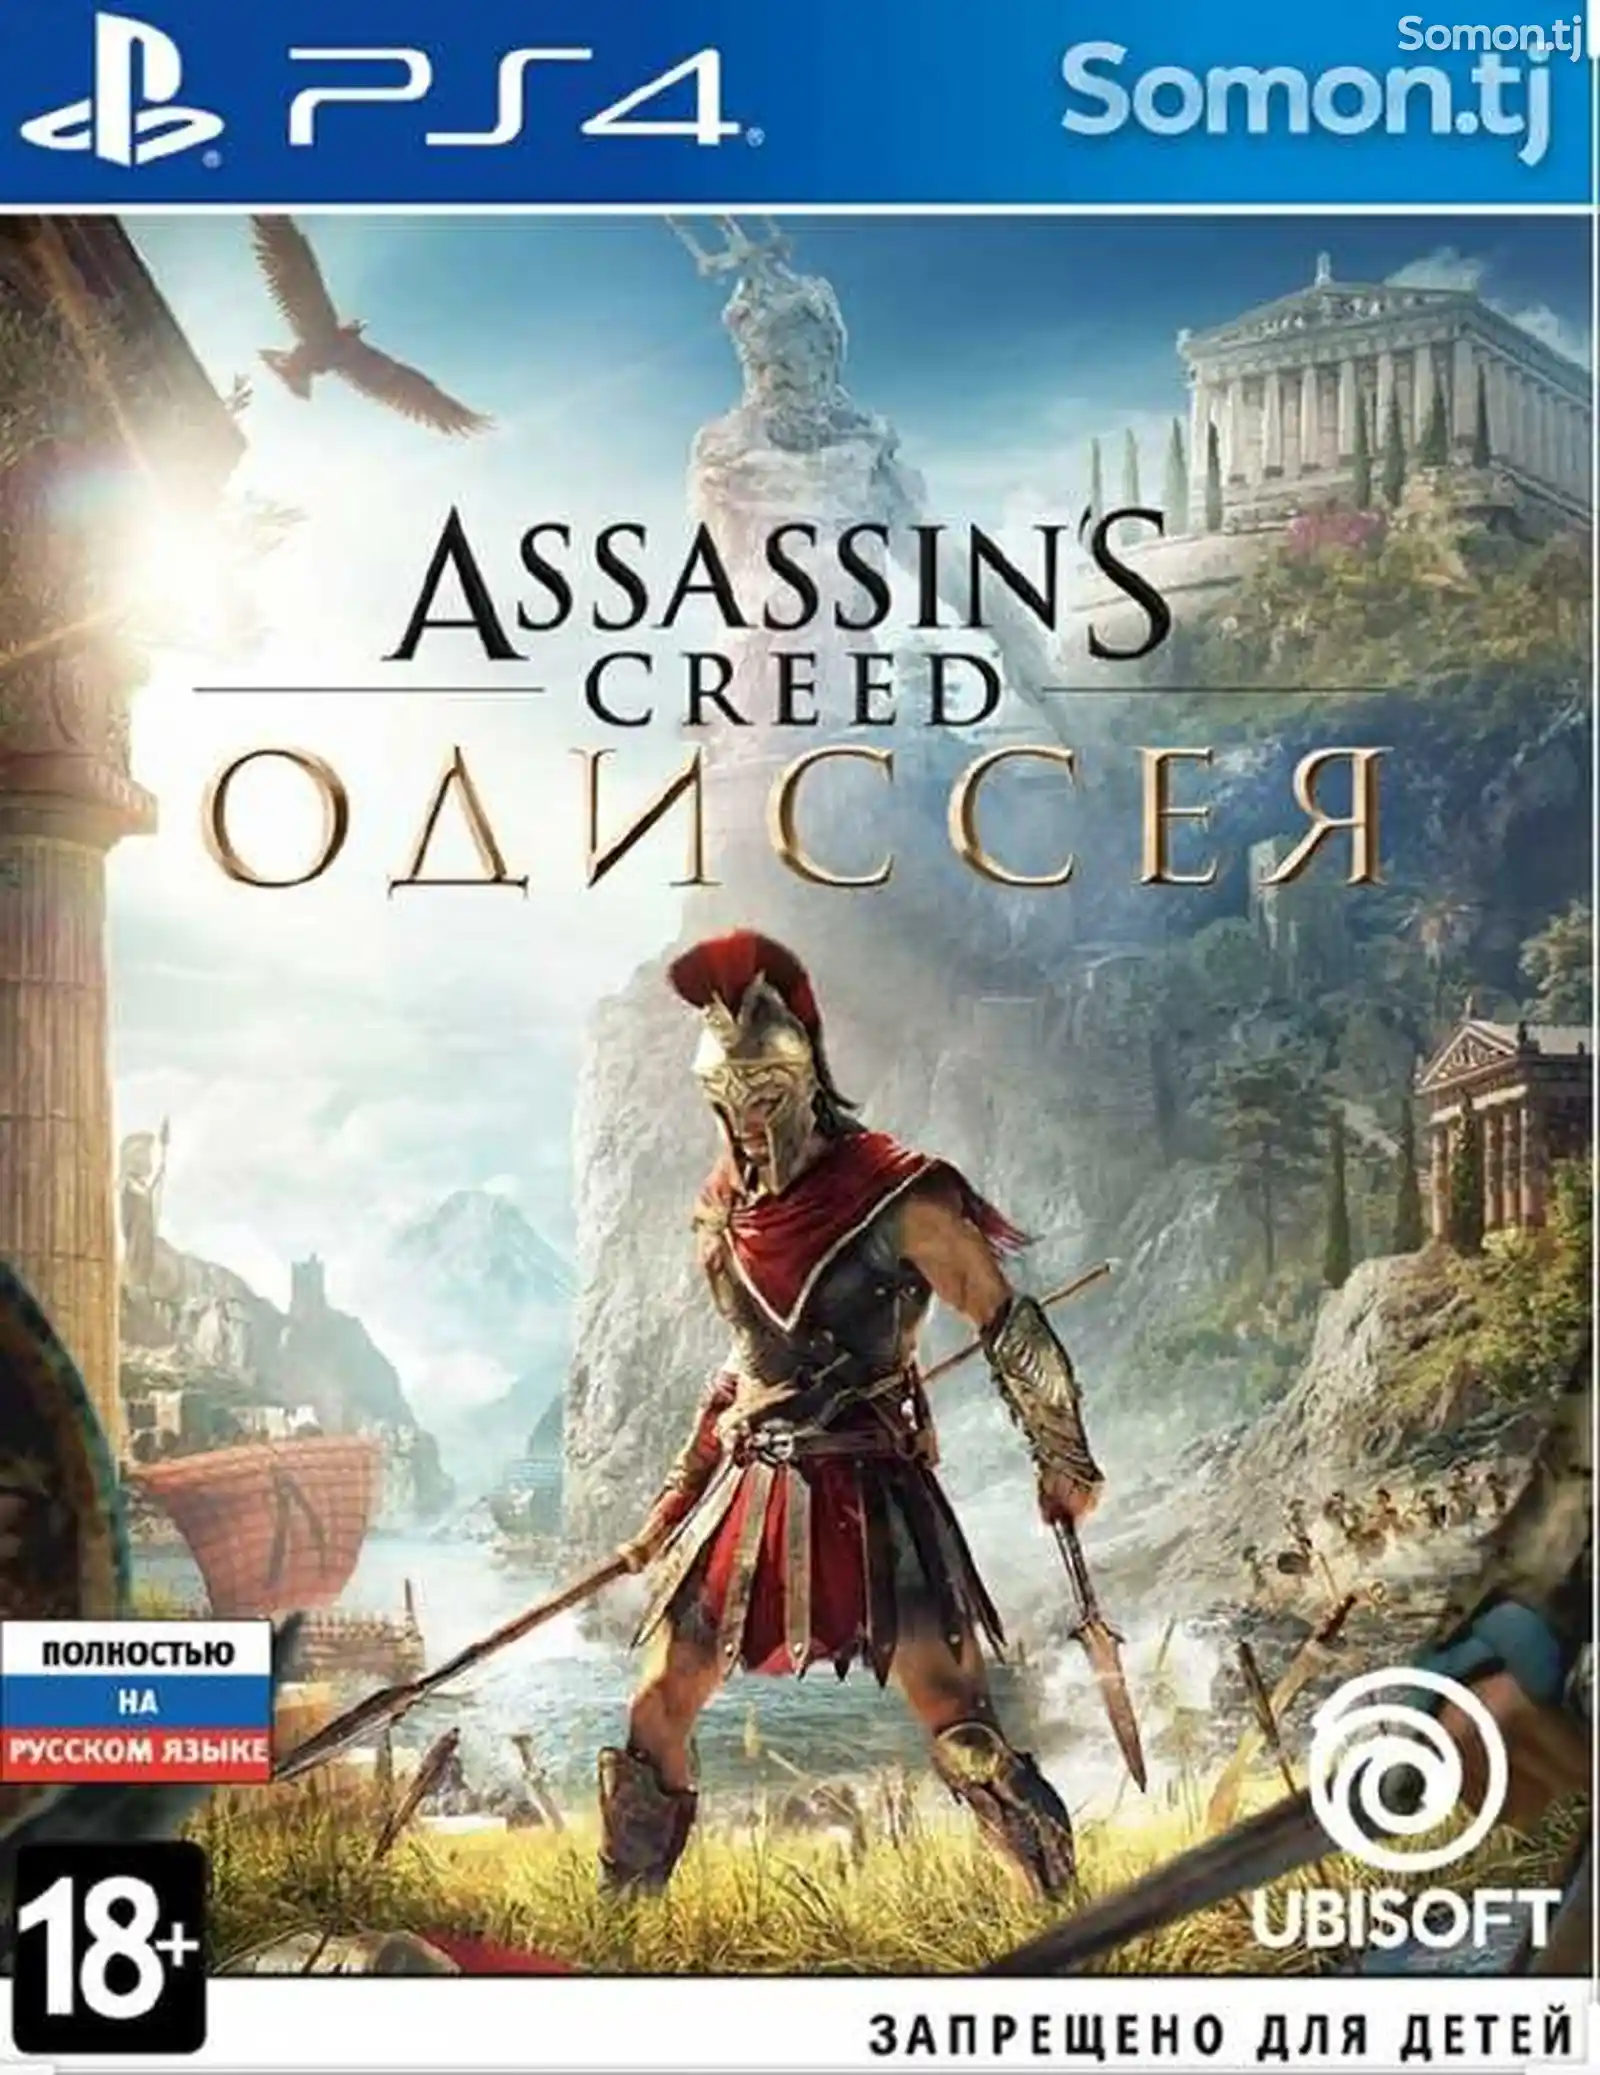 Игра Assassins creed Odyssey для PS-4 / 5.05 / 6.72 / 7.02 / 7.55 / 9.00 /-1